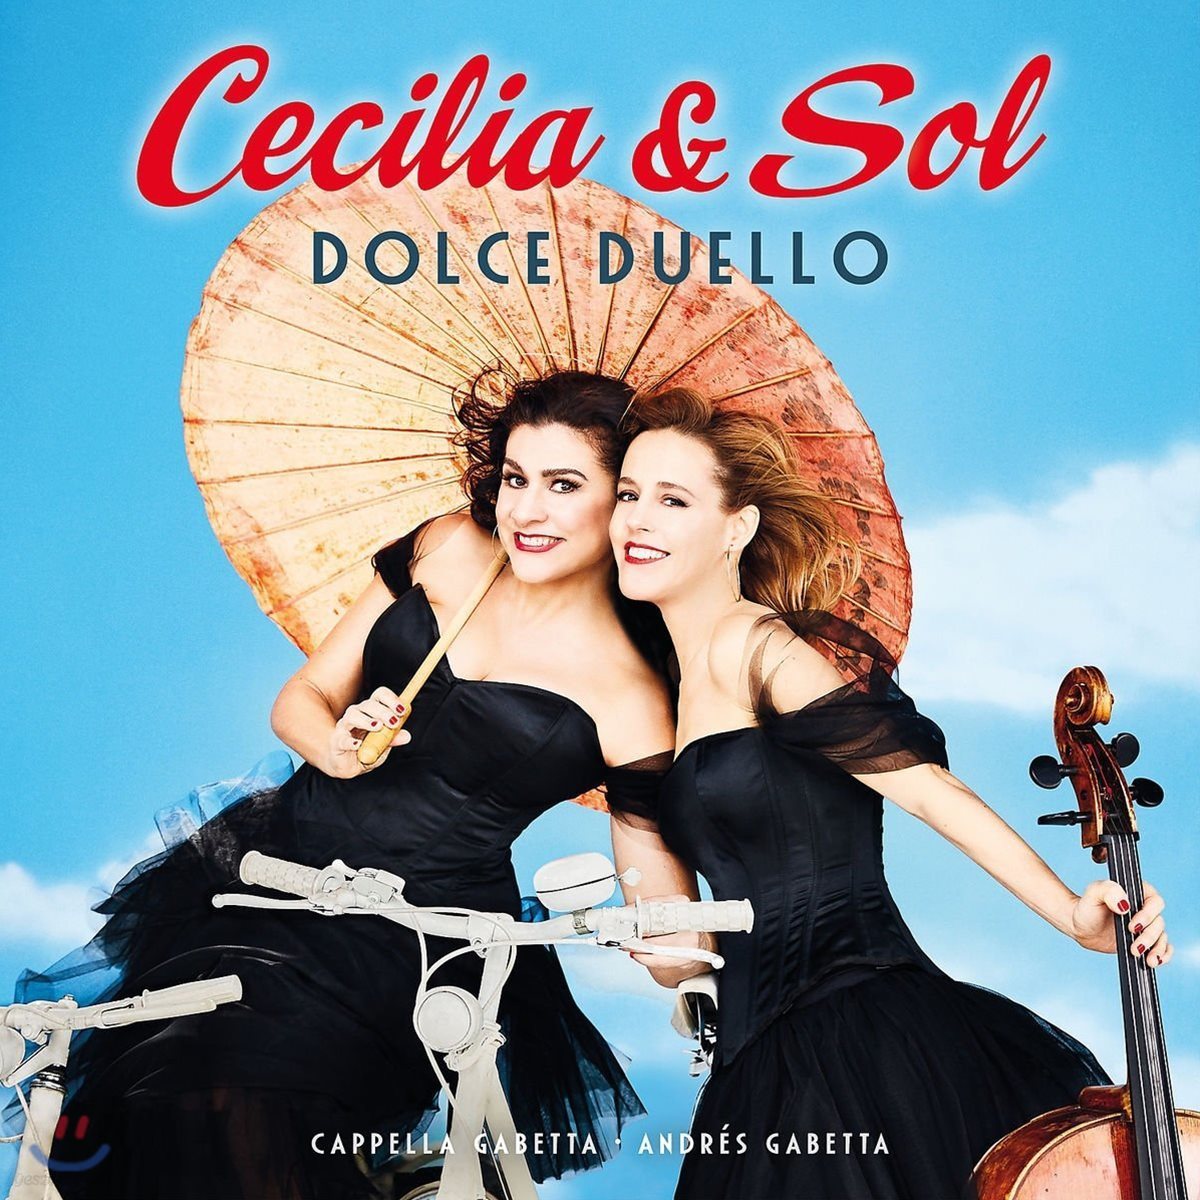 Cecilia Bartoli / Sol Gabetta 체칠리아 & 솔 - 돌체 두엘로 (Dolce Duello) [2 LP]